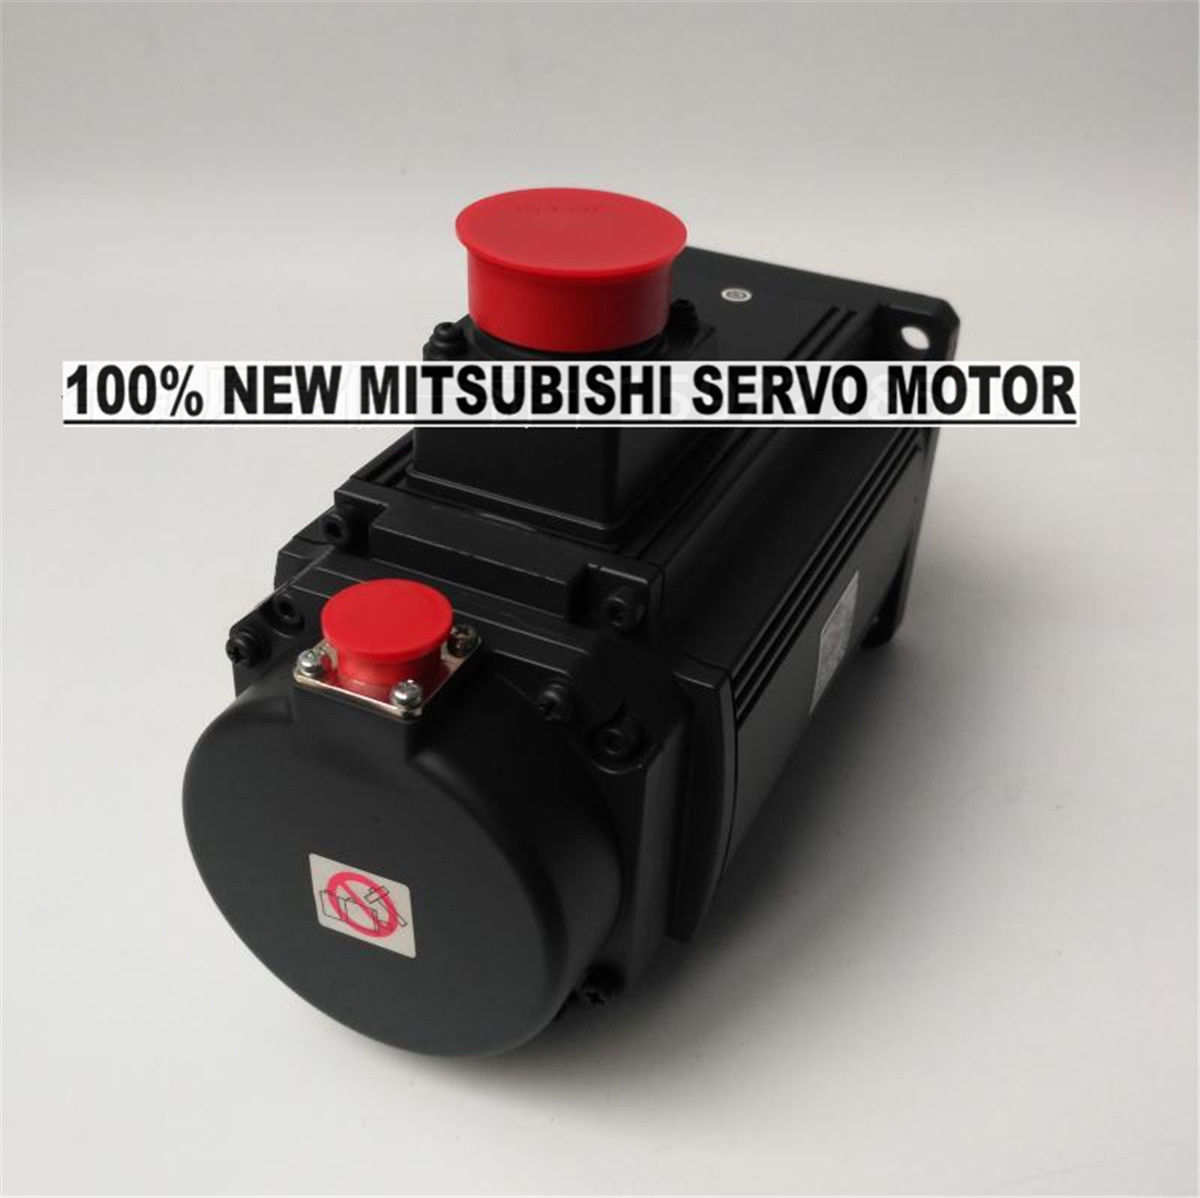 GENUINE NEW Mitsubishi Servo Motor HG-RR203 in box HGRR203 - Click Image to Close